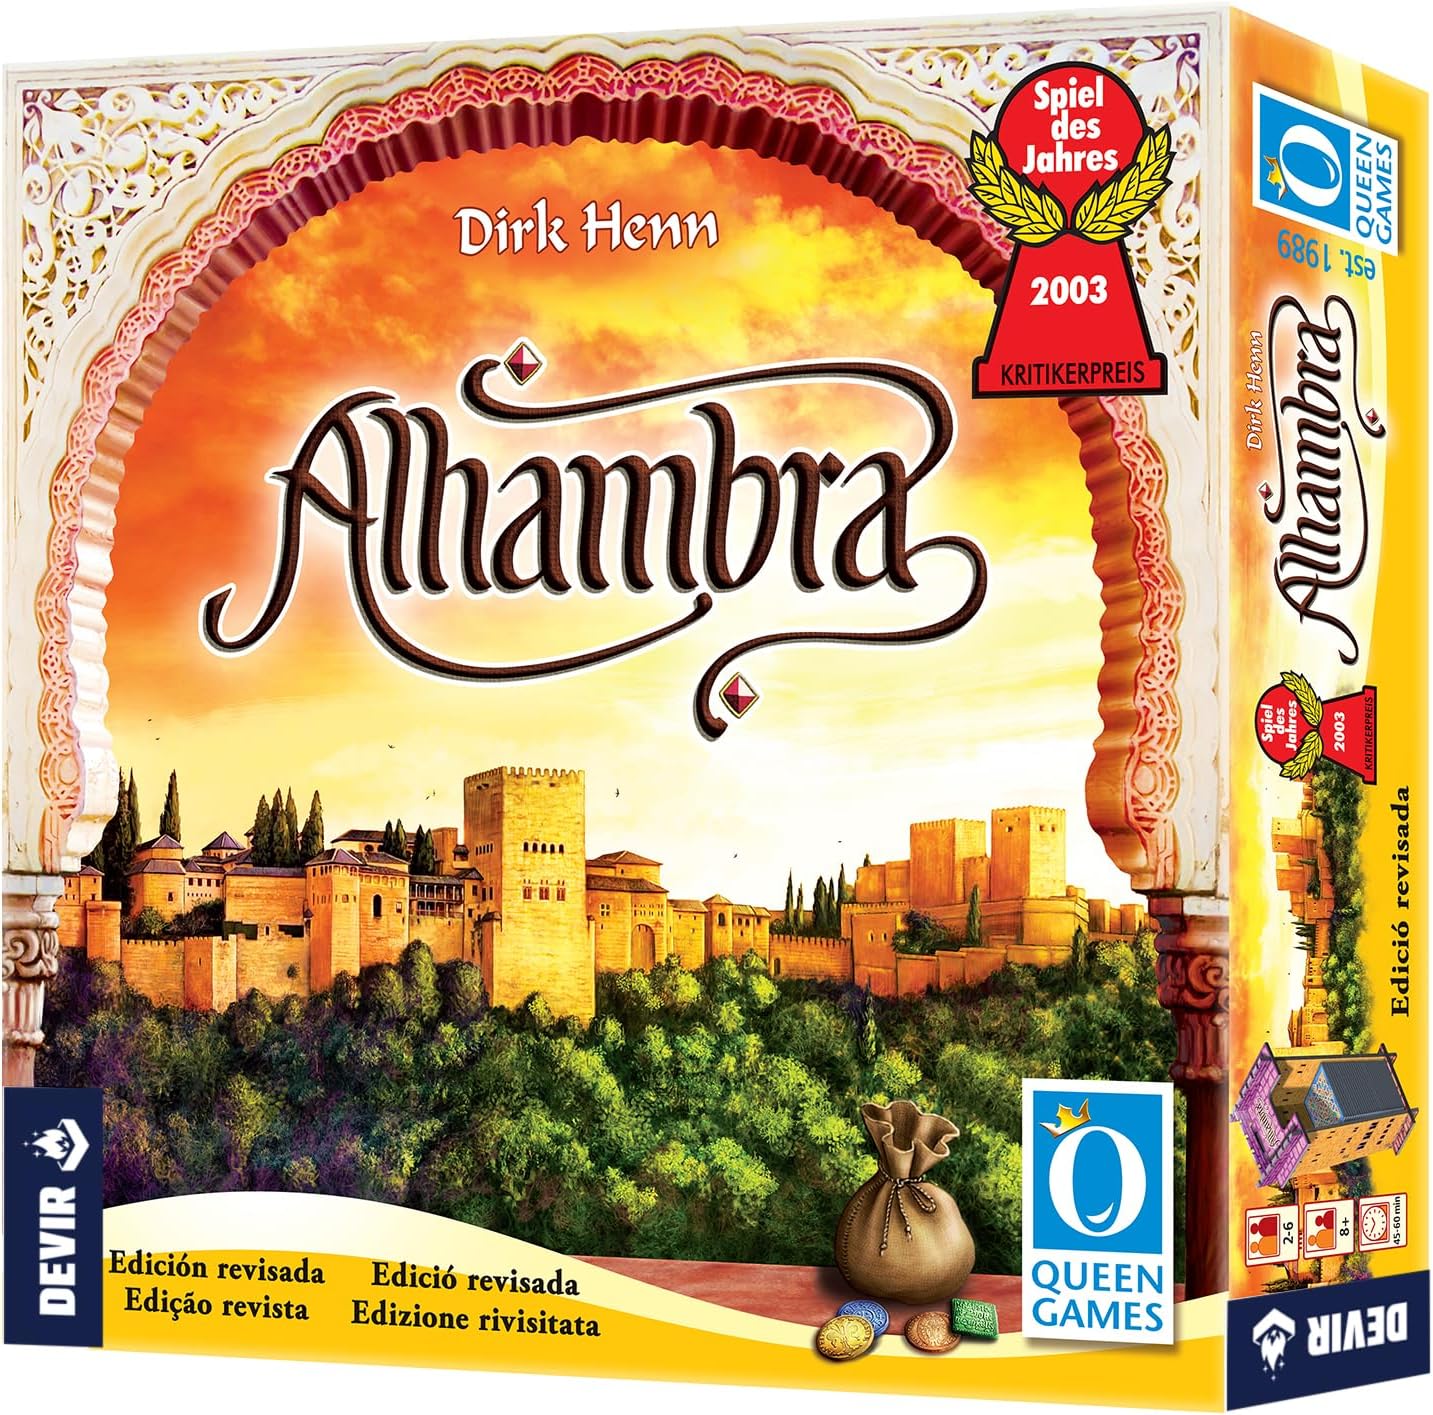 Jeu de société Alhambra Ed. 2020 - Thème Histoire/Médiéval - De 2 à 6 joueurs - Dès 8 ans - Durée 45-60min. environ.